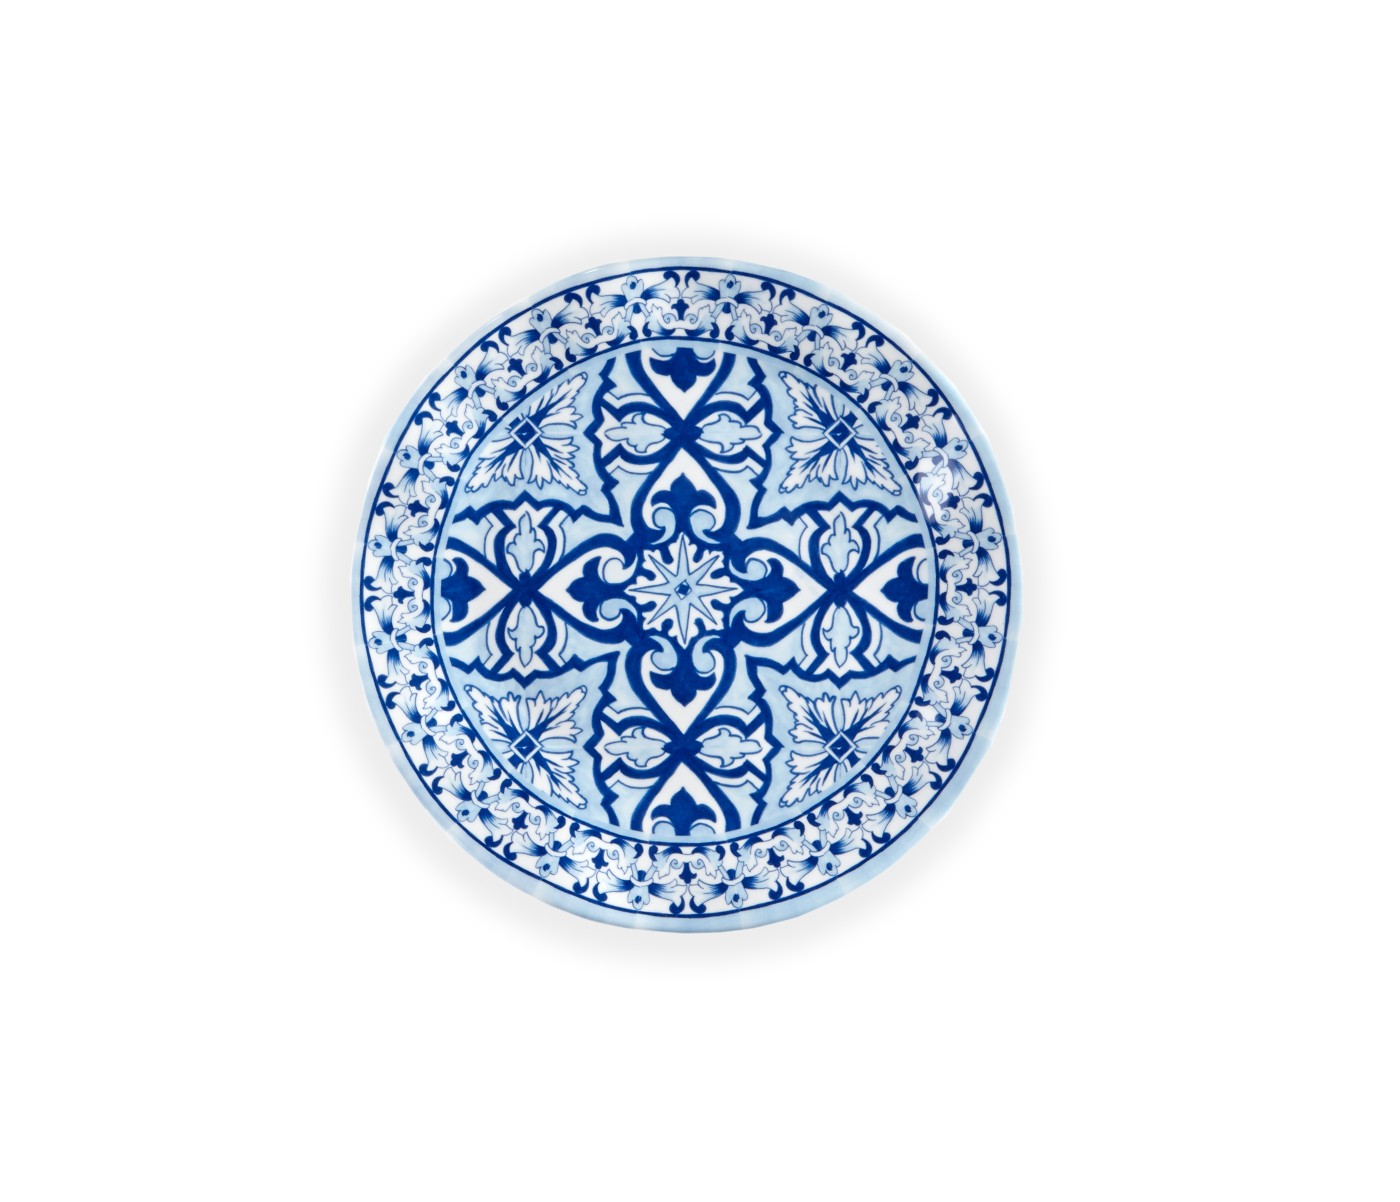 Q Squared TALAVERA Collection Blau Teller 20 cm 100% Melamin - 100-83806EU